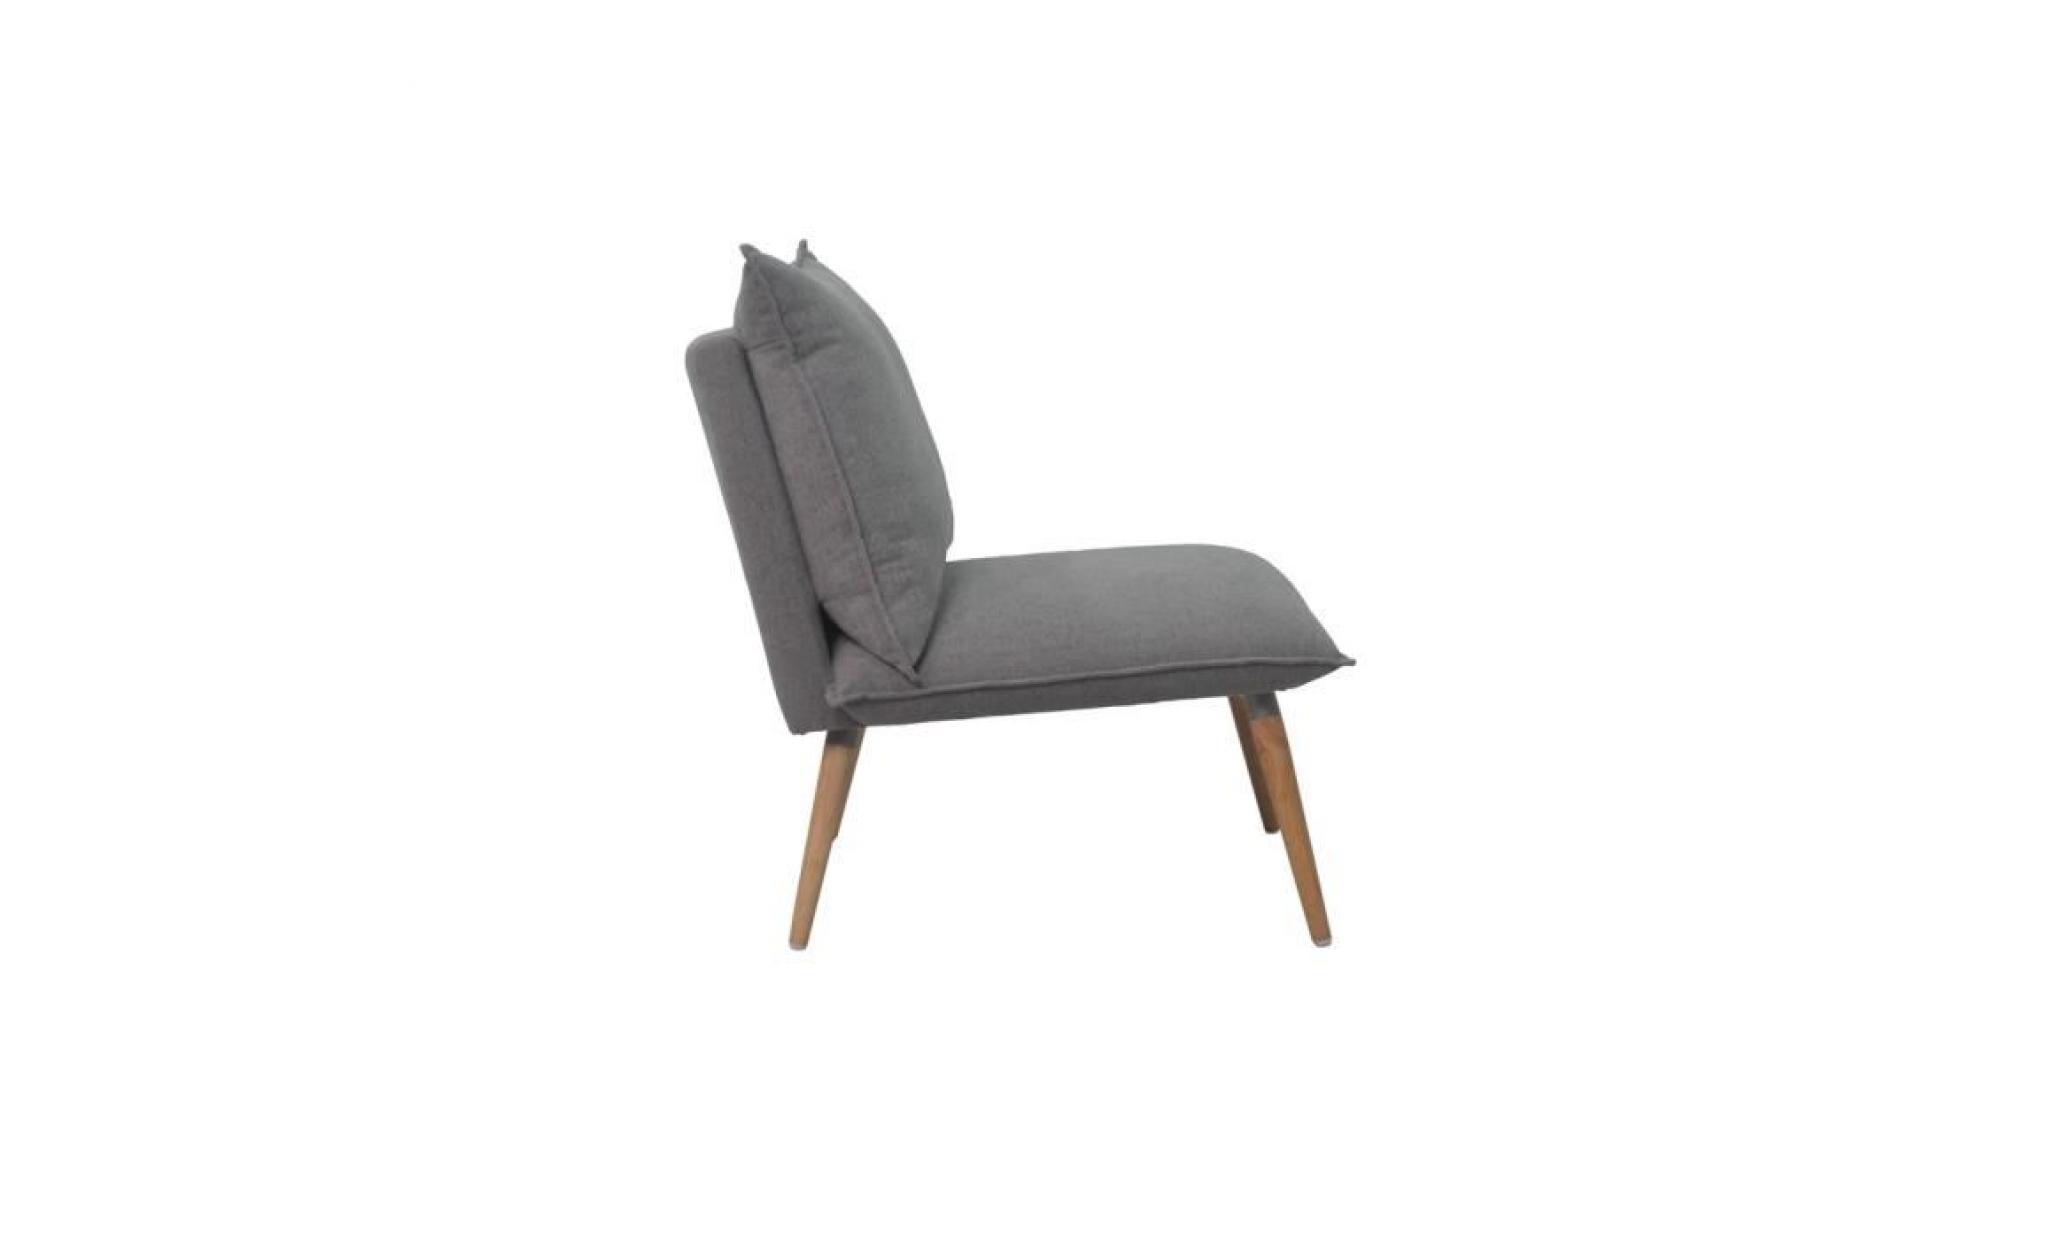 phil fauteuil en bois massif   tissu polyester   style vintage   l 64 x p 81 cm pas cher